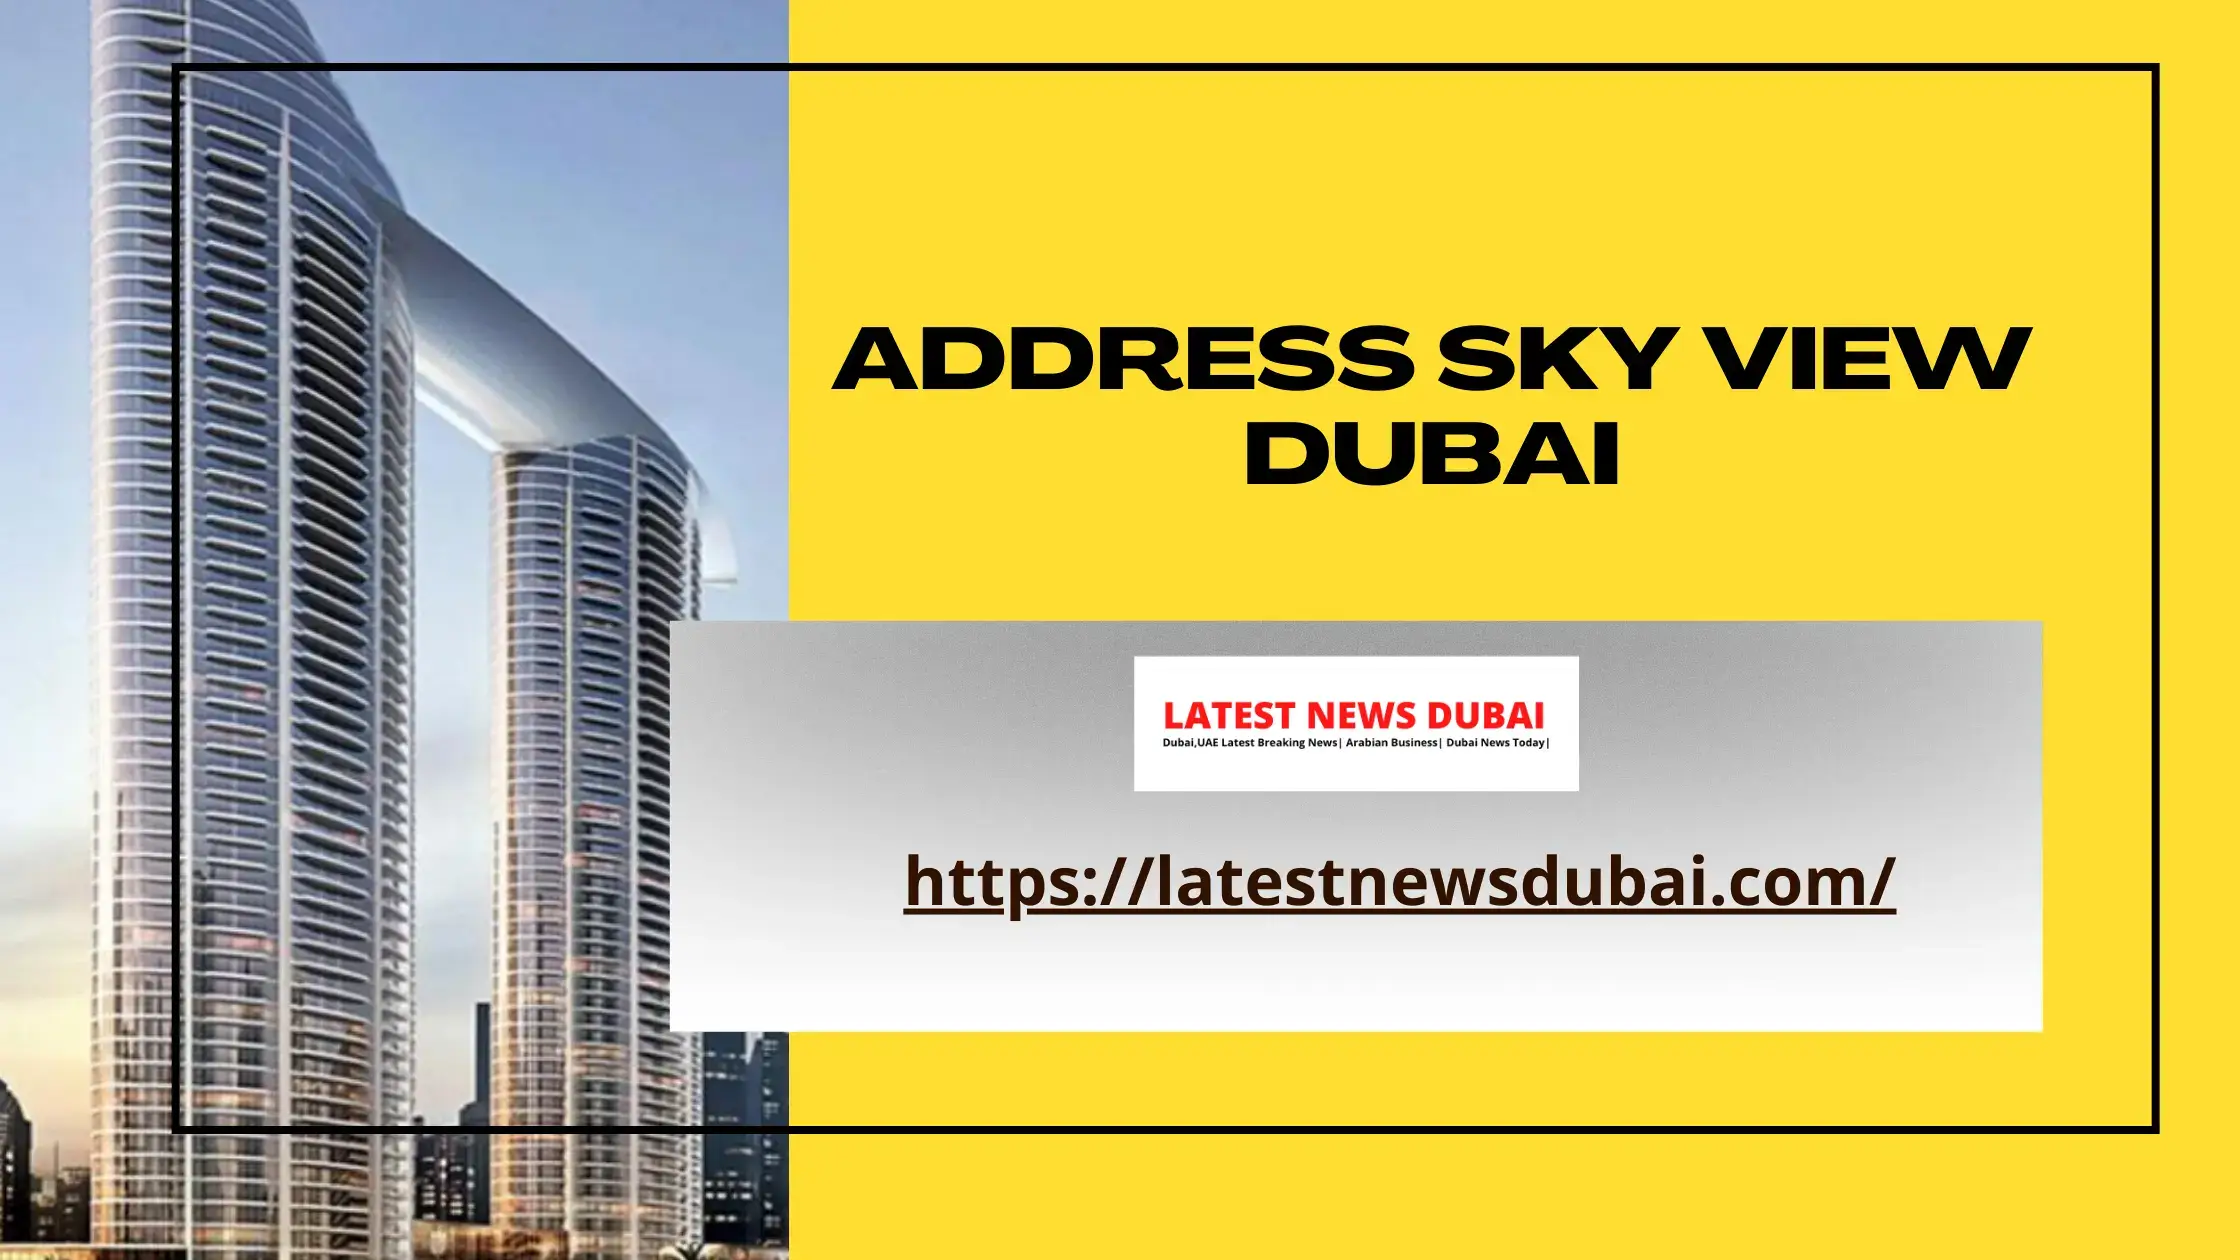 Address sky view Dubai